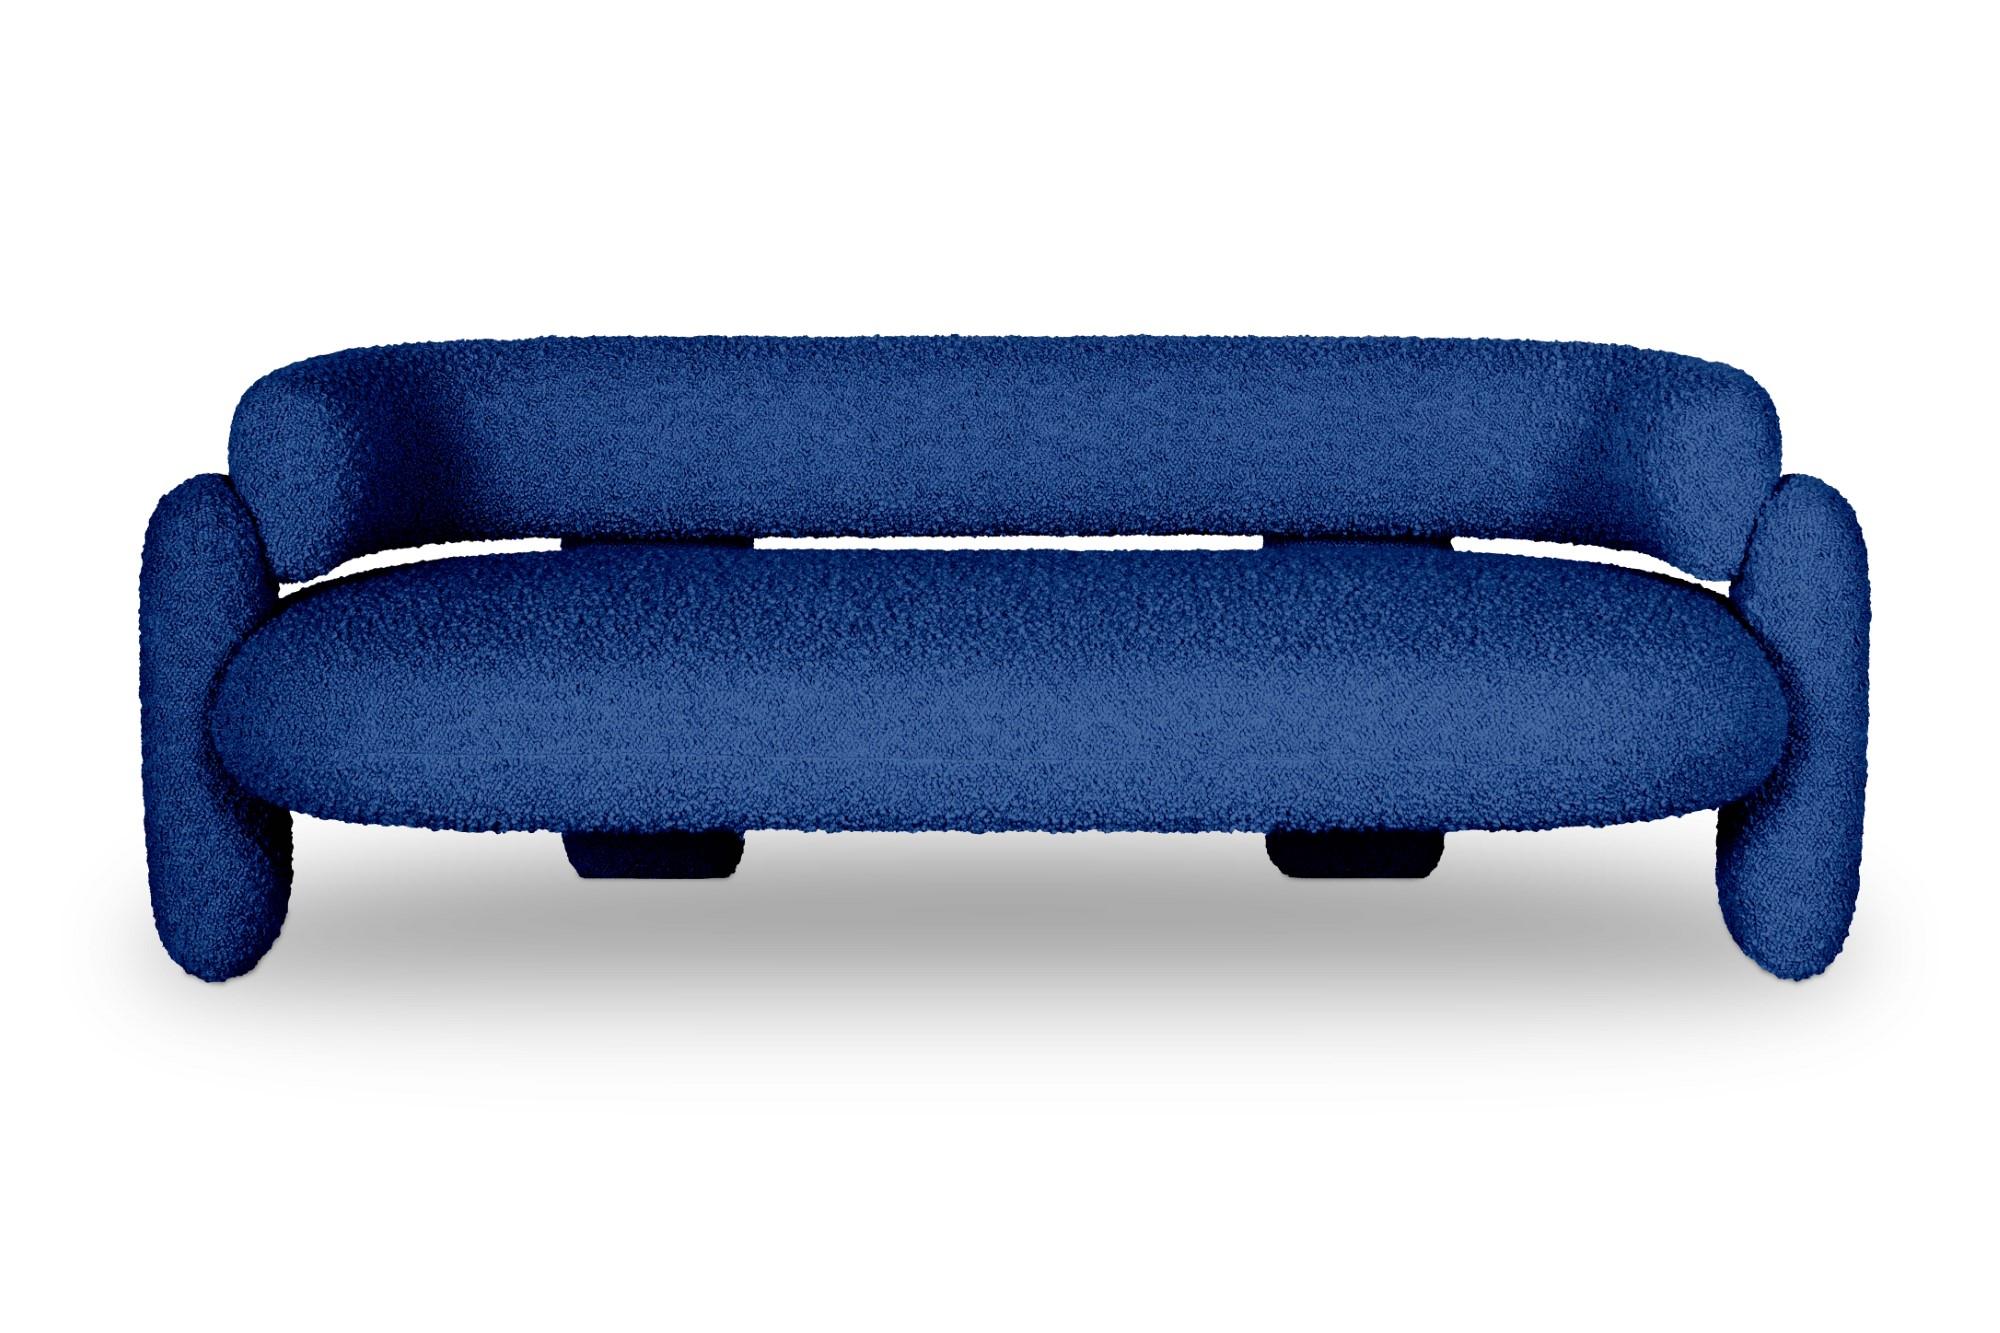 Embrace Kobaltfarbenes Sofa von Royal Stranger
Abmessungen: B 200 x H 70 x T 90 cm. Sitzhöhe 47 cm.
MATERIAL: Massivholzrahmen, Schaumstoff, Polsterung.
Erhältlich in anderen Stoffen von Royal Stranger und in COM. Bitte kontaktieren Sie